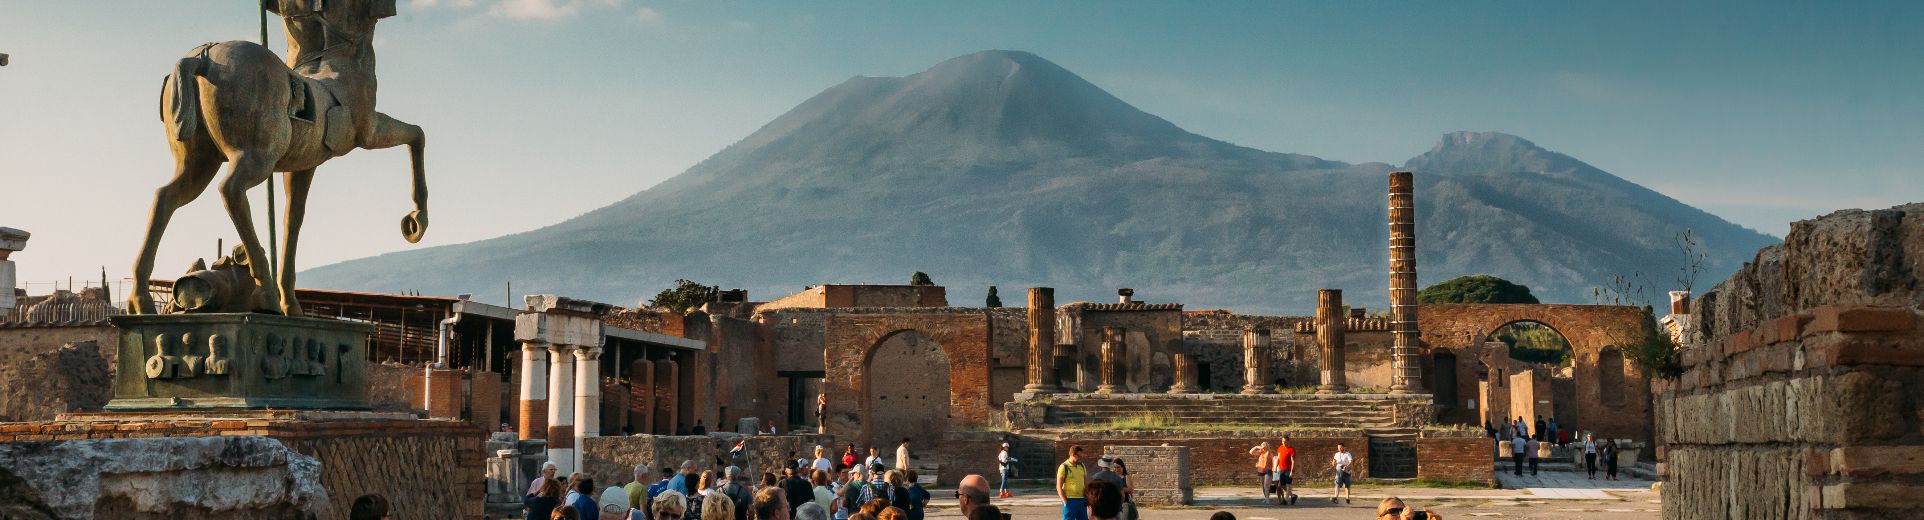 Vesuvius and Pompeii excavations